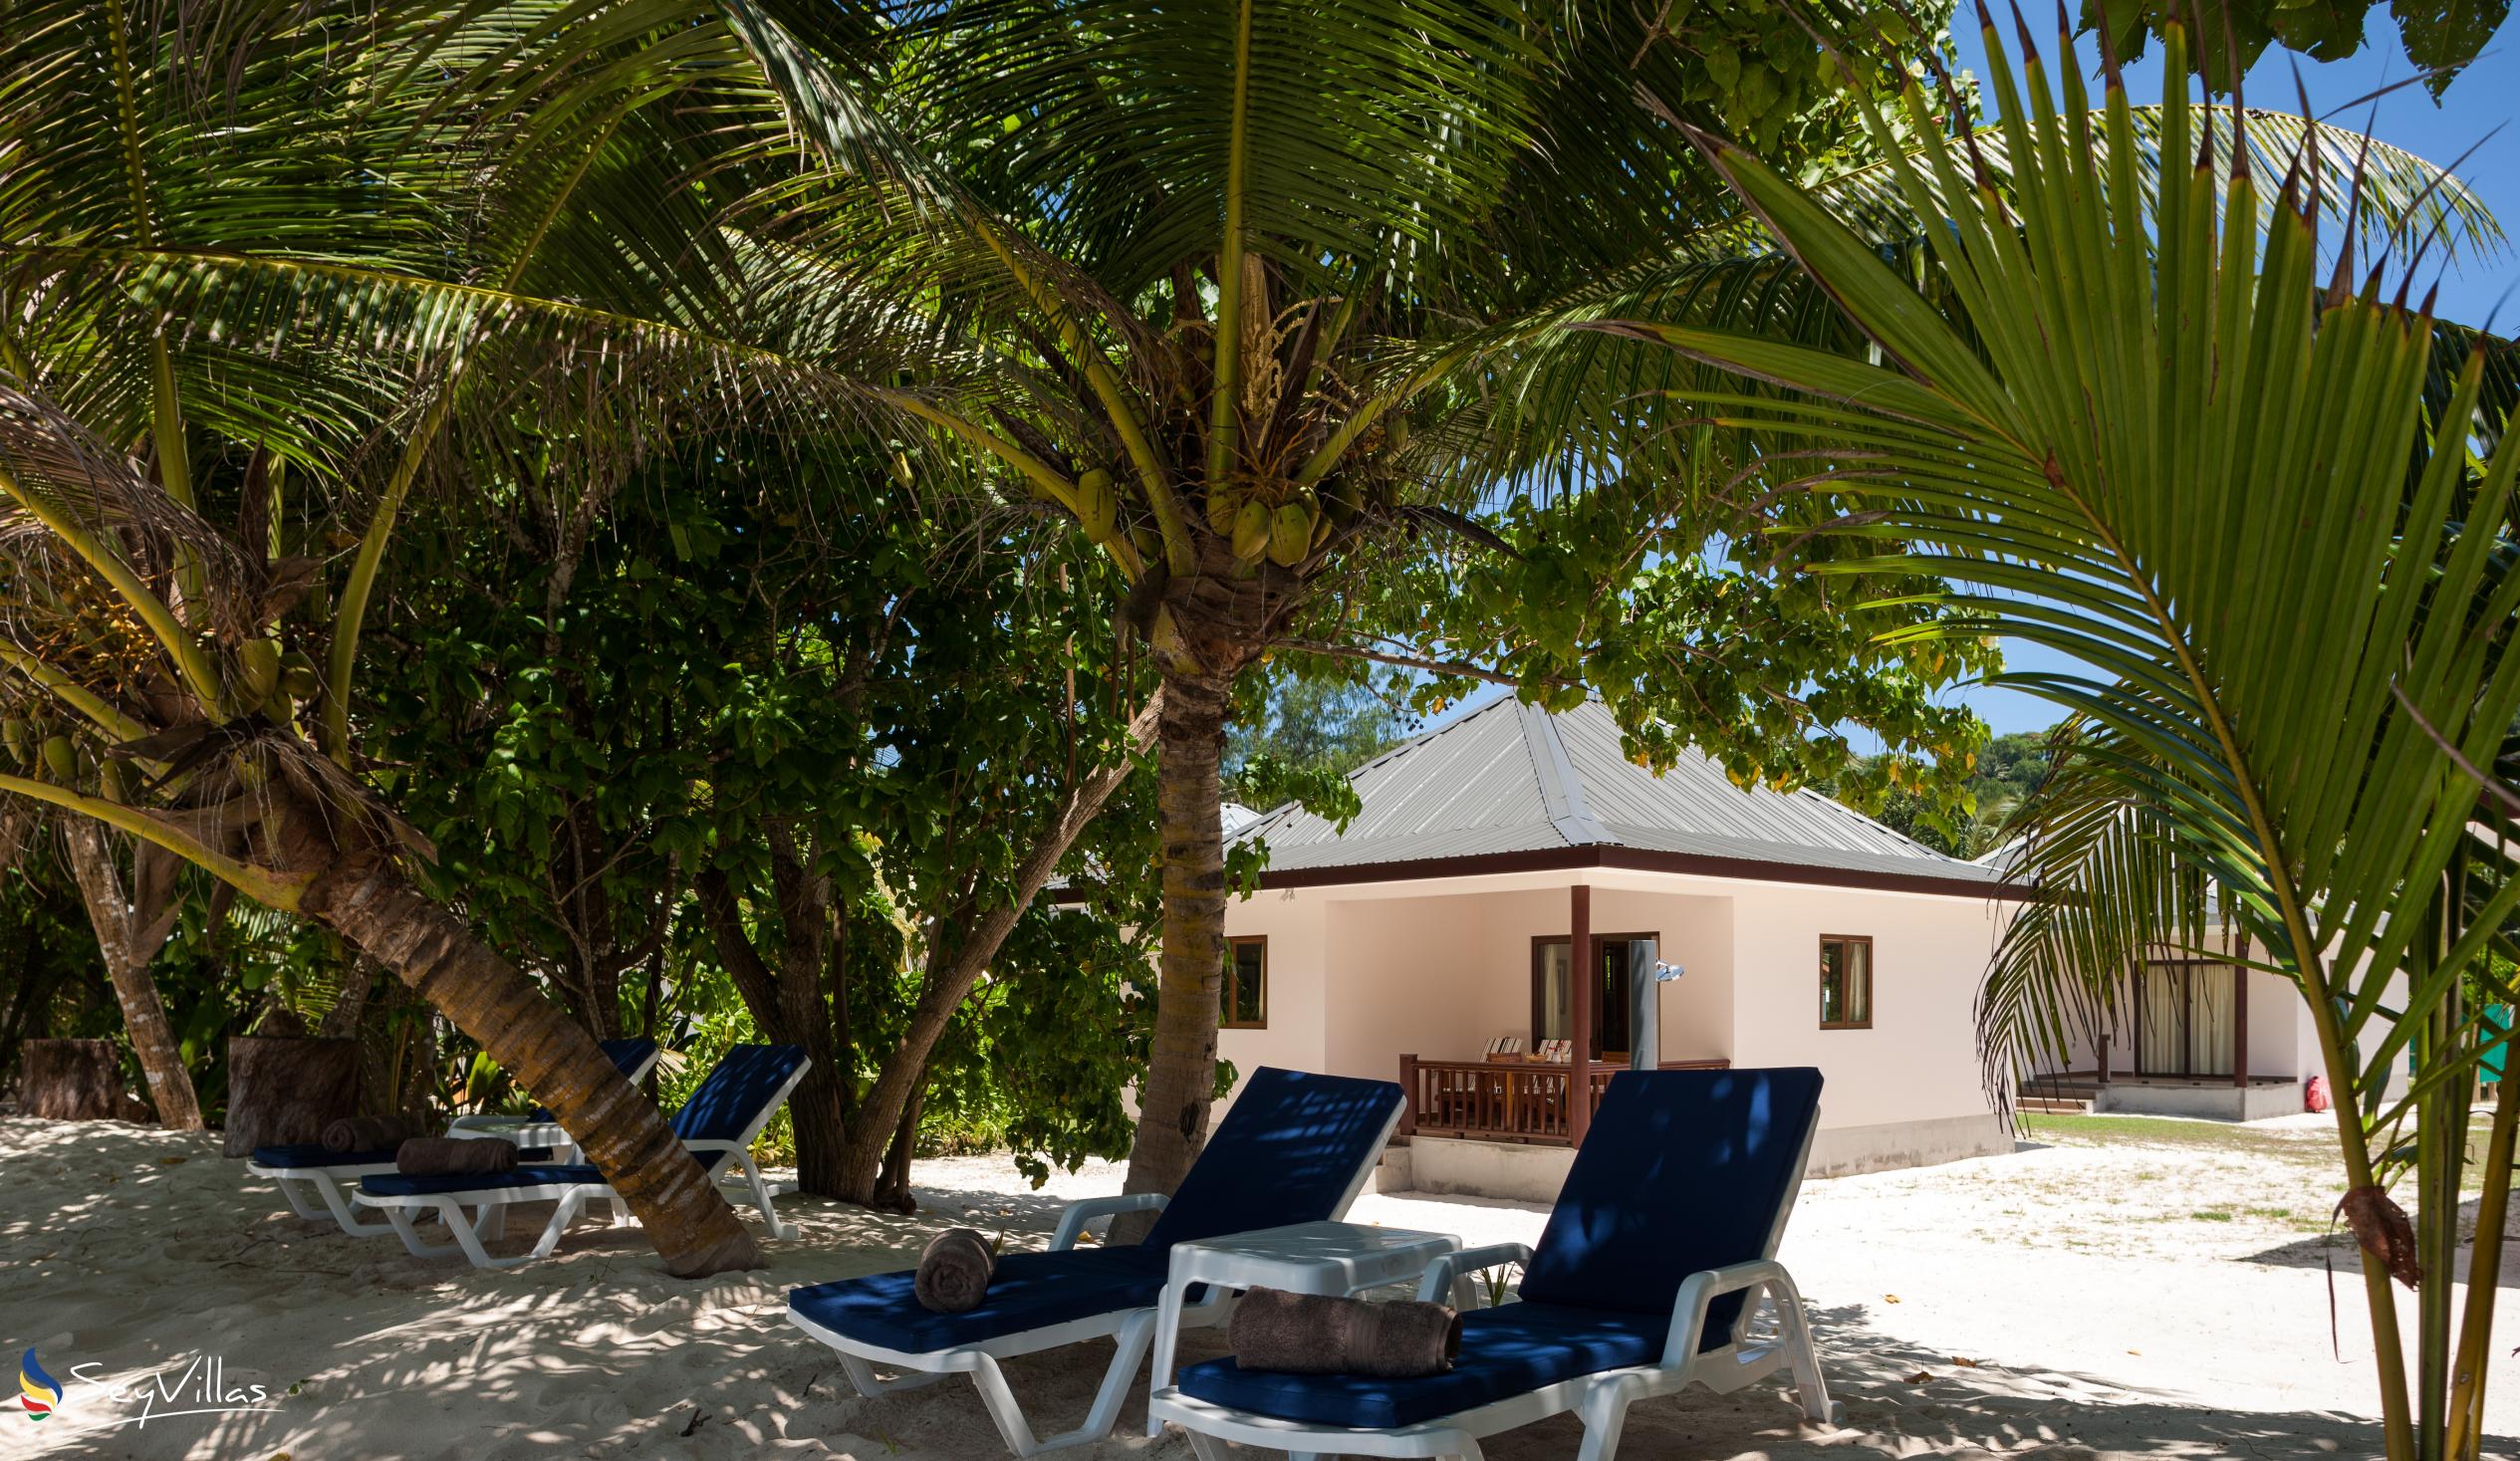 Foto 11: Villa Belle Plage - Aussenbereich - Praslin (Seychellen)